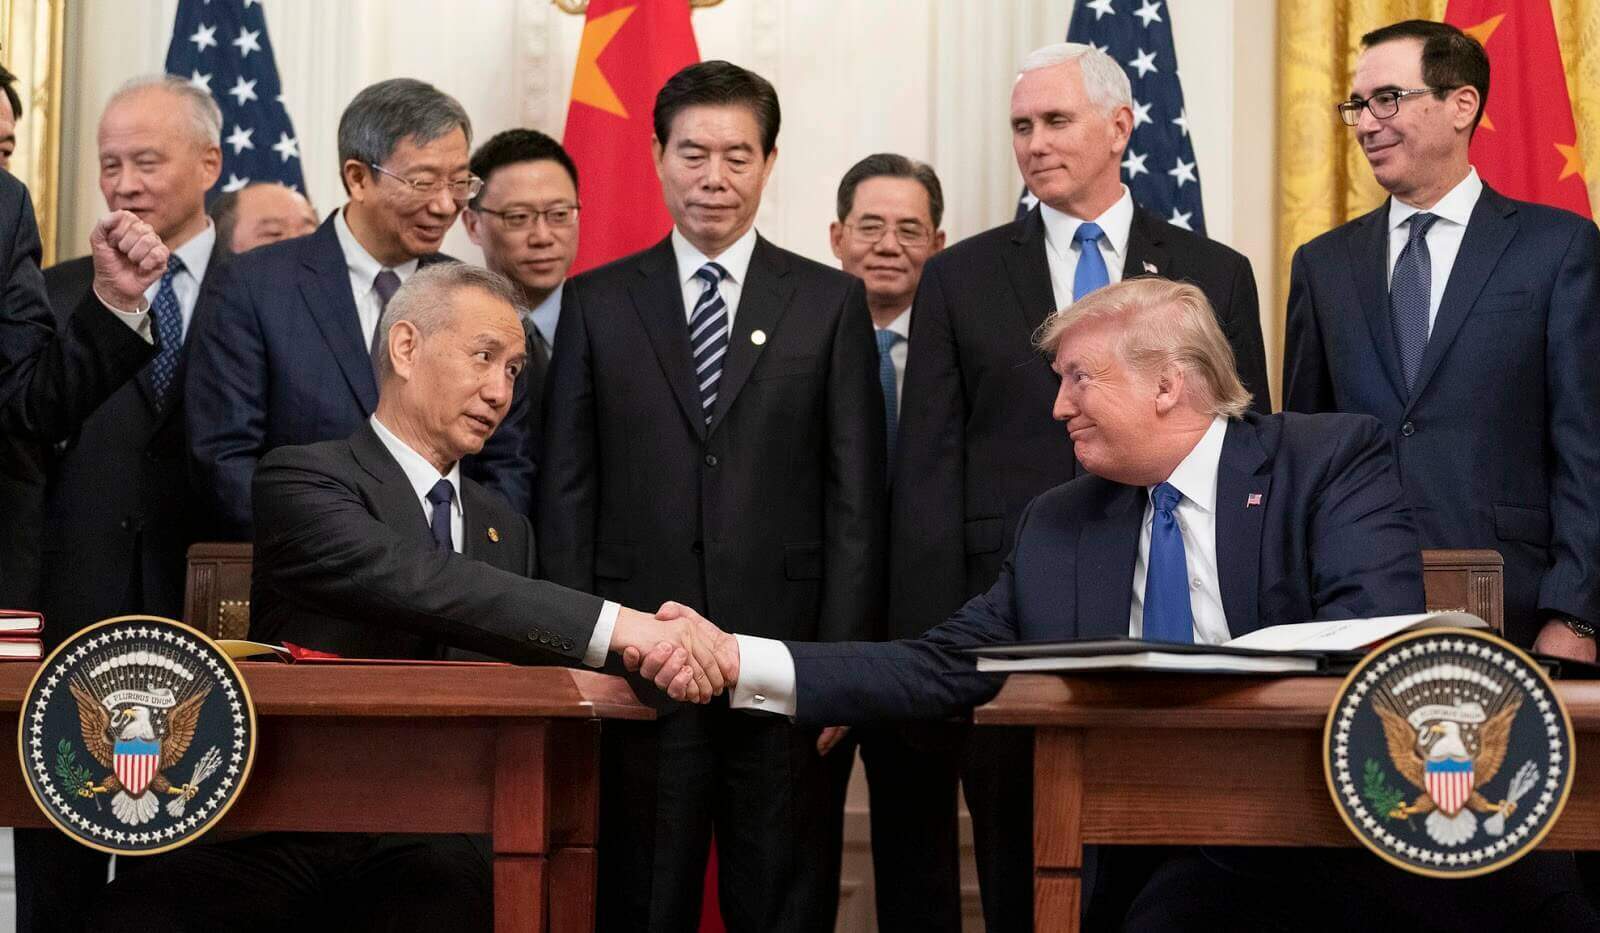 Na imagem, os presidentes da China e dos Estados Unidos apertam as mãos. Conteúdo sobre China e Estados Unidos.